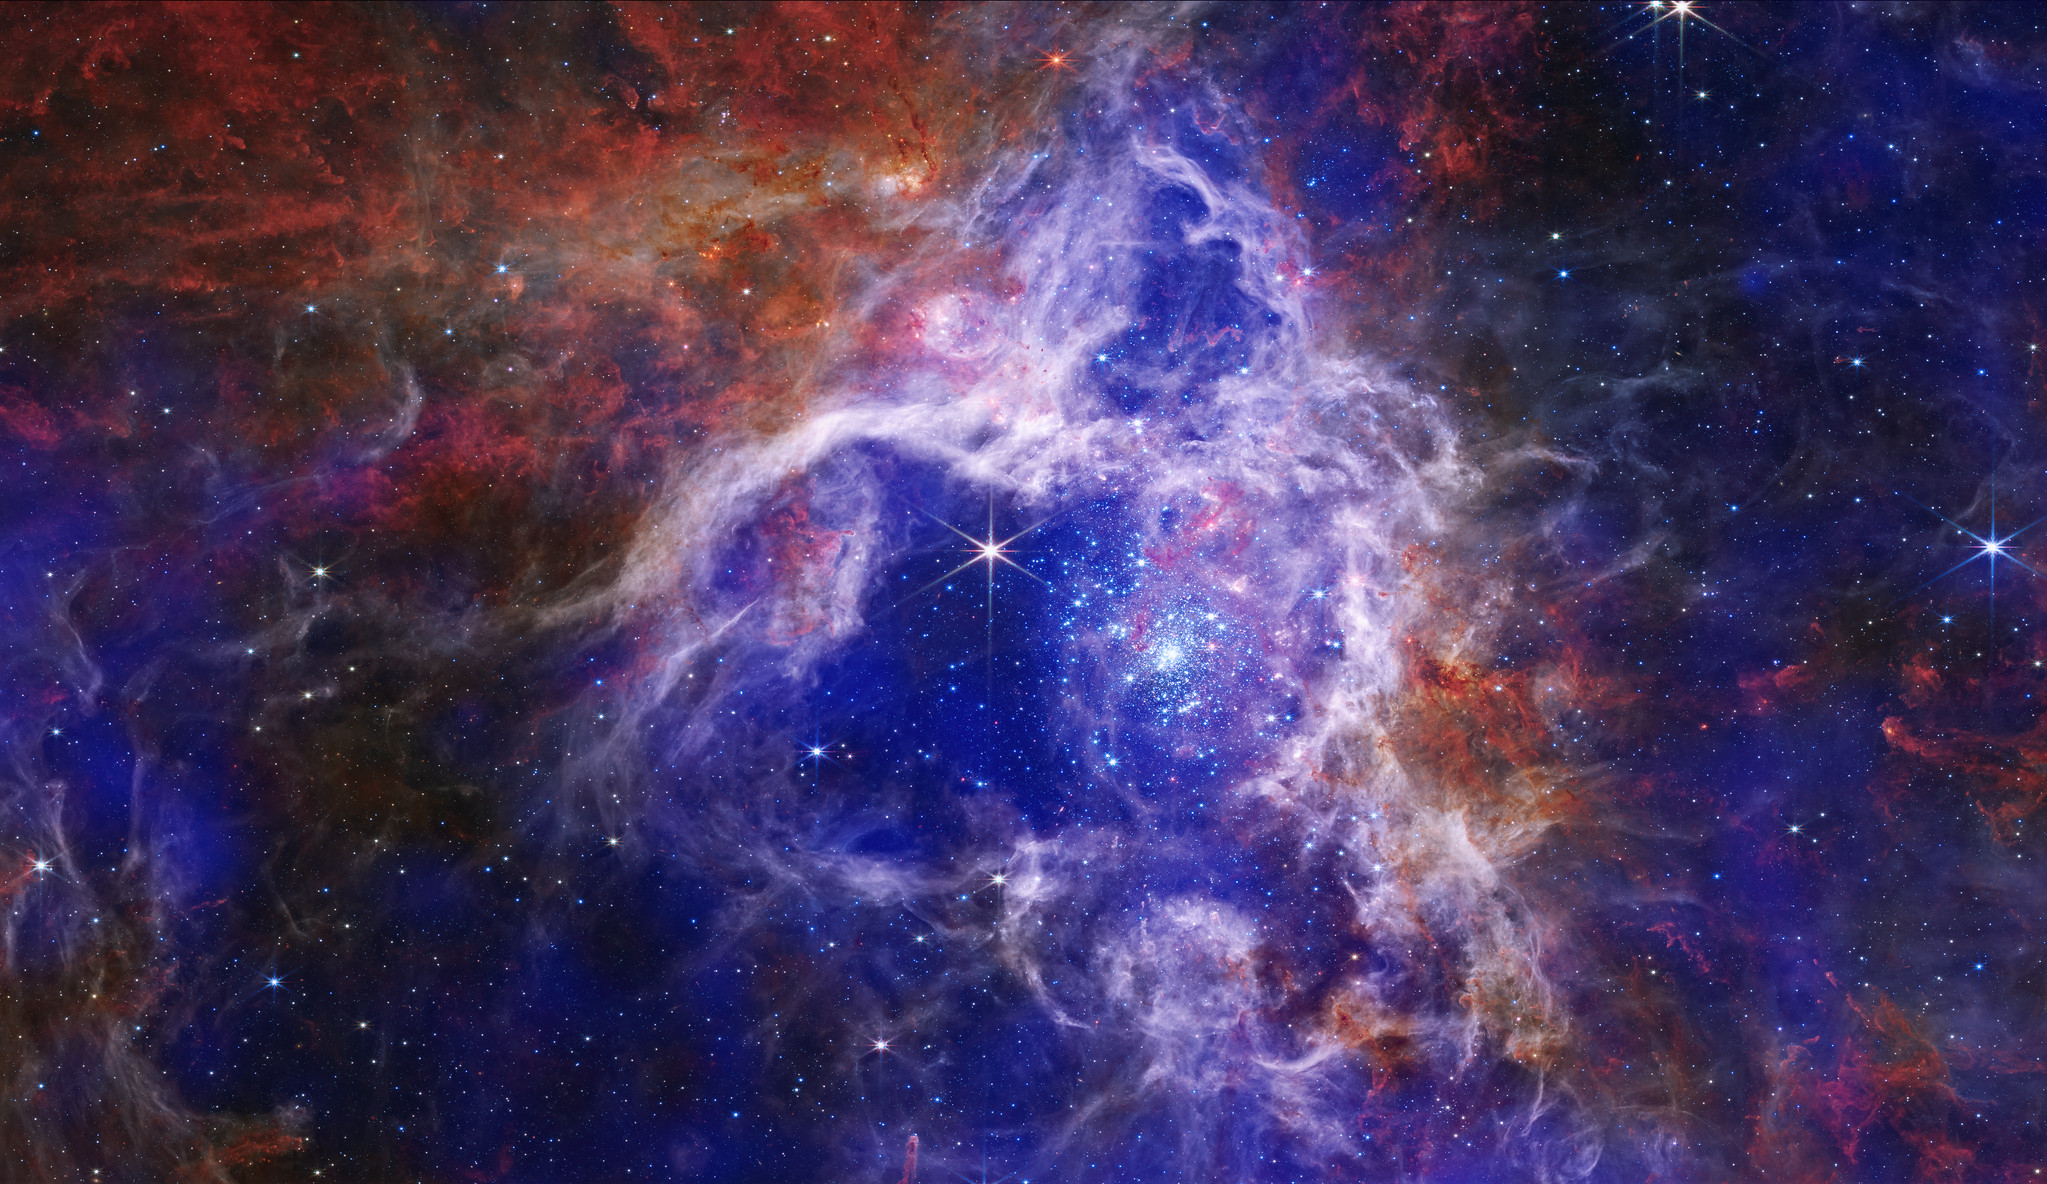 Réalisée grâce au télescope James-Webb, cette image composite de la nébuleuse de la Tarentule, située à 160 000 années-lumière de la Terre, vous donne-t-elle aussi envie de jouer à des jeux de société? Juste moi, peut-être...